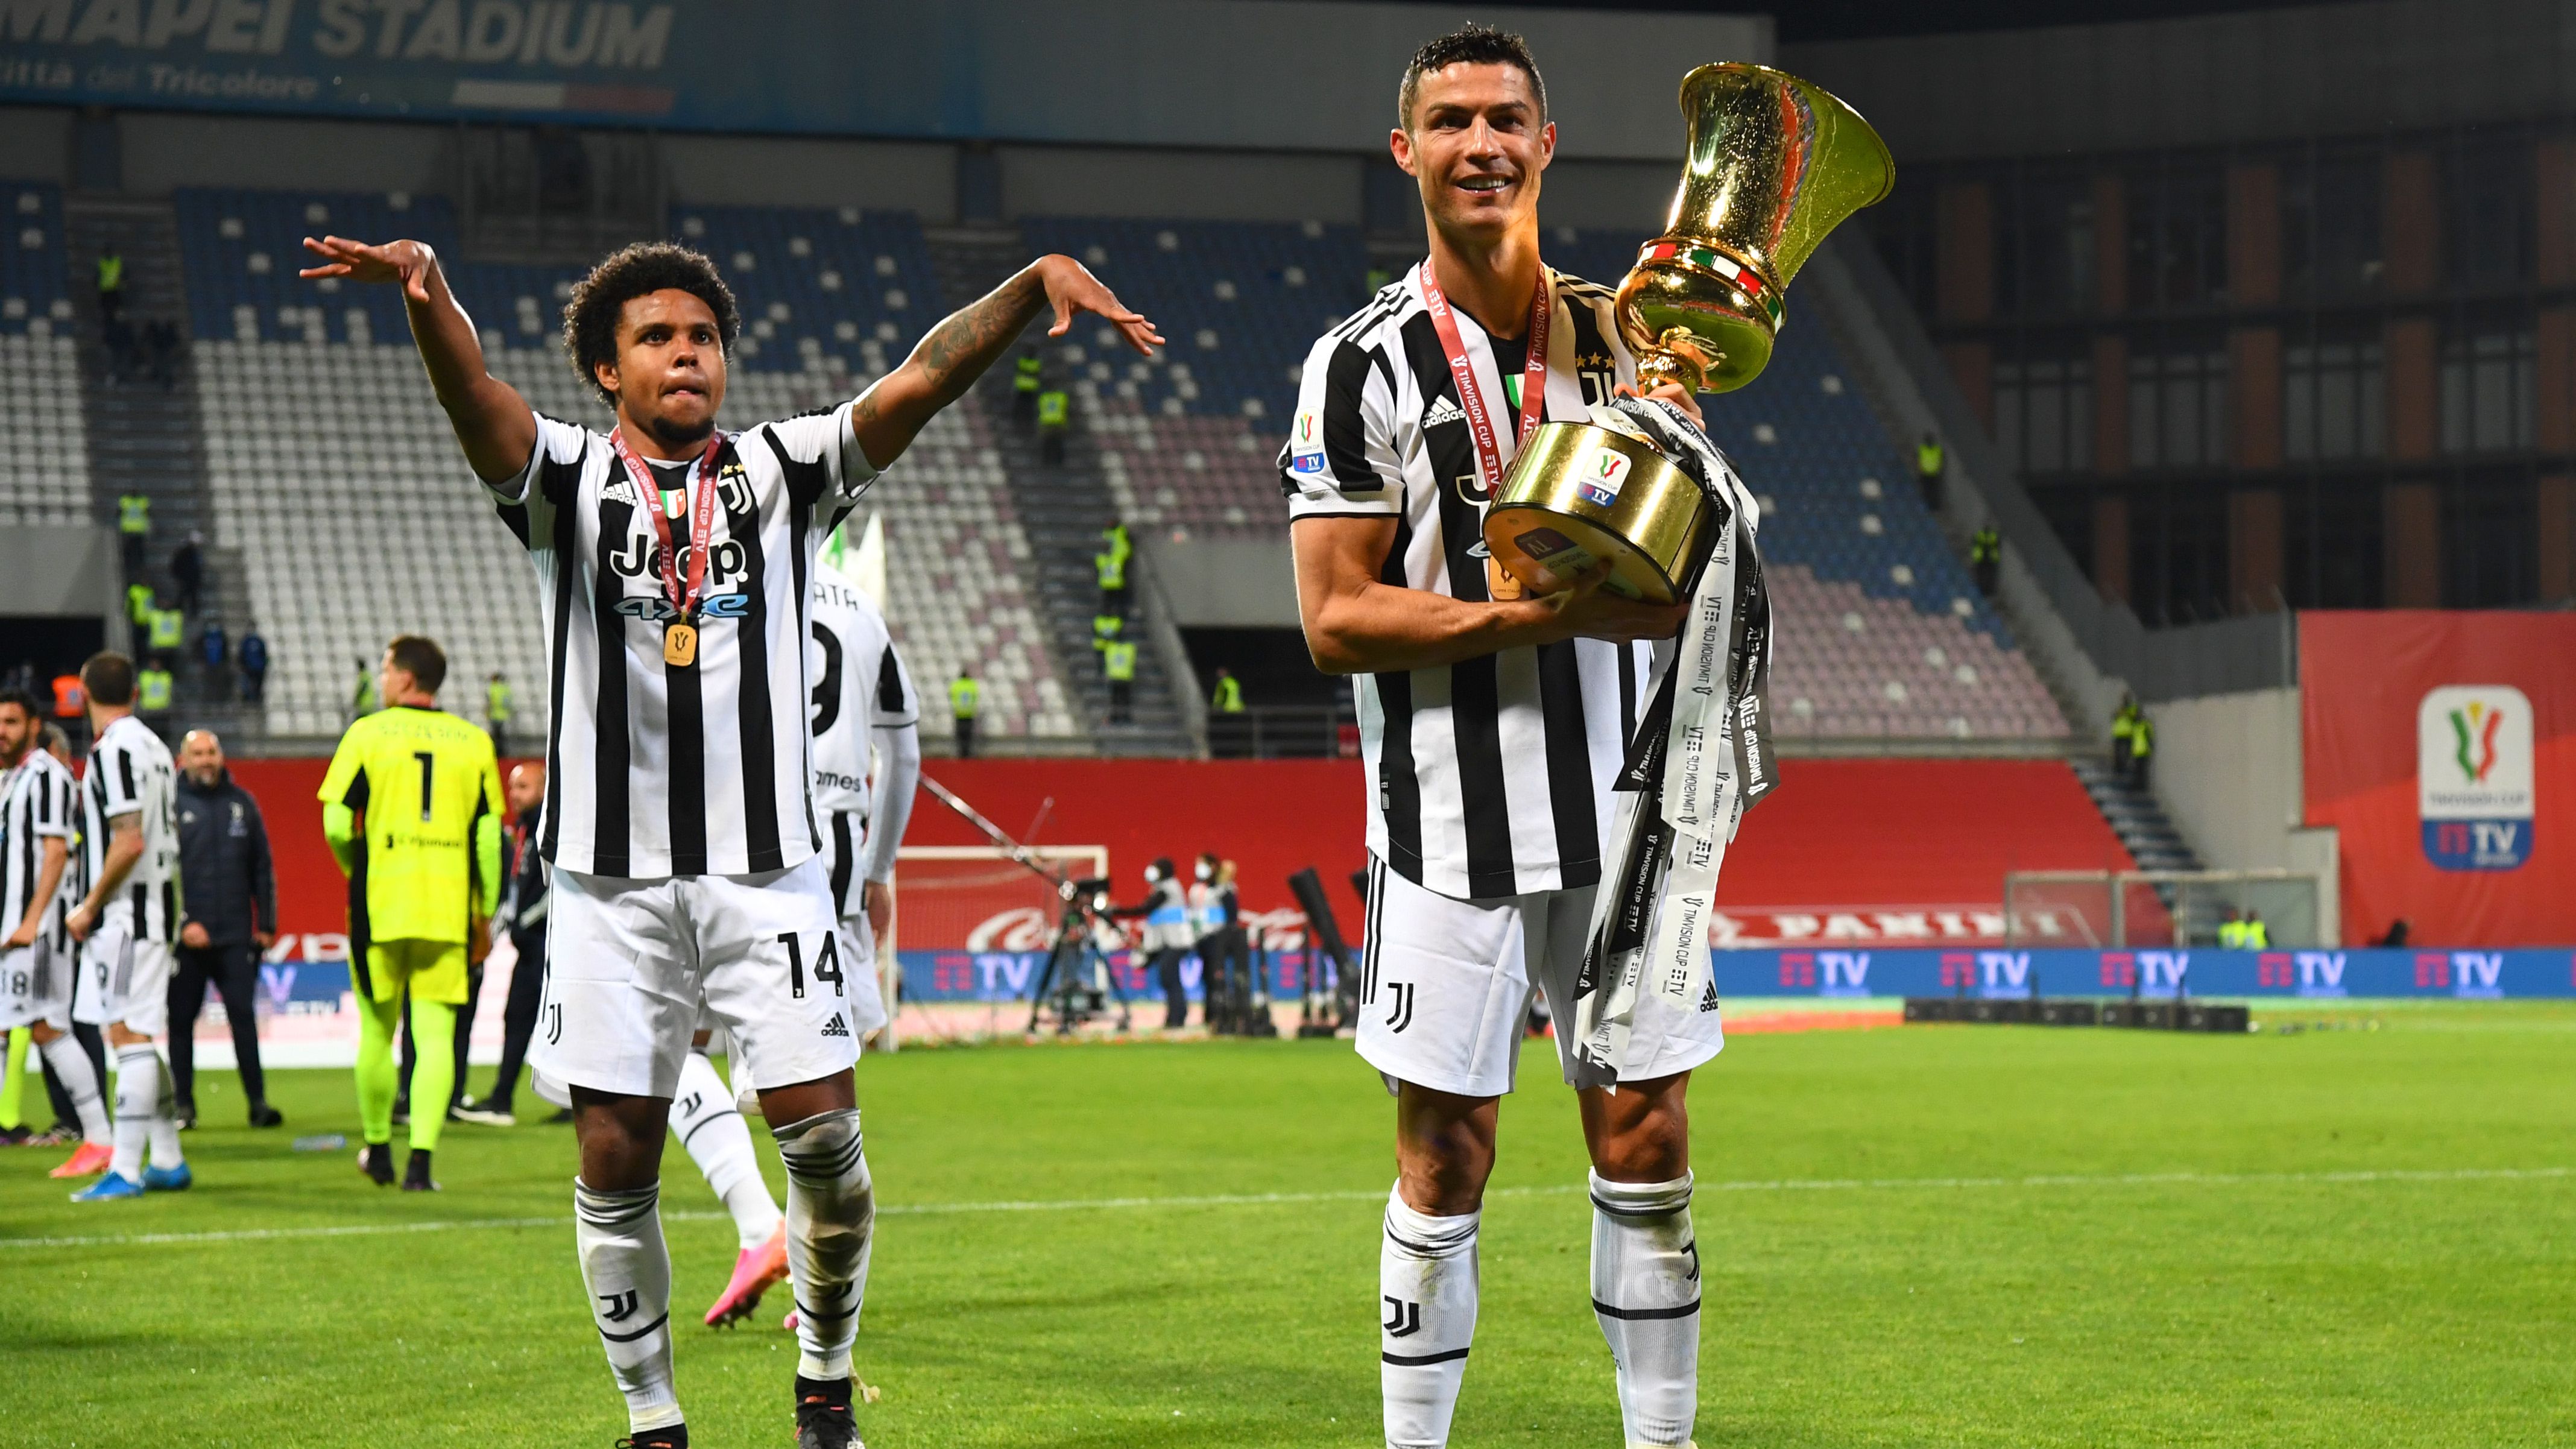 Ronaldo comemorando um de seus títulos na passagem pela Juventus